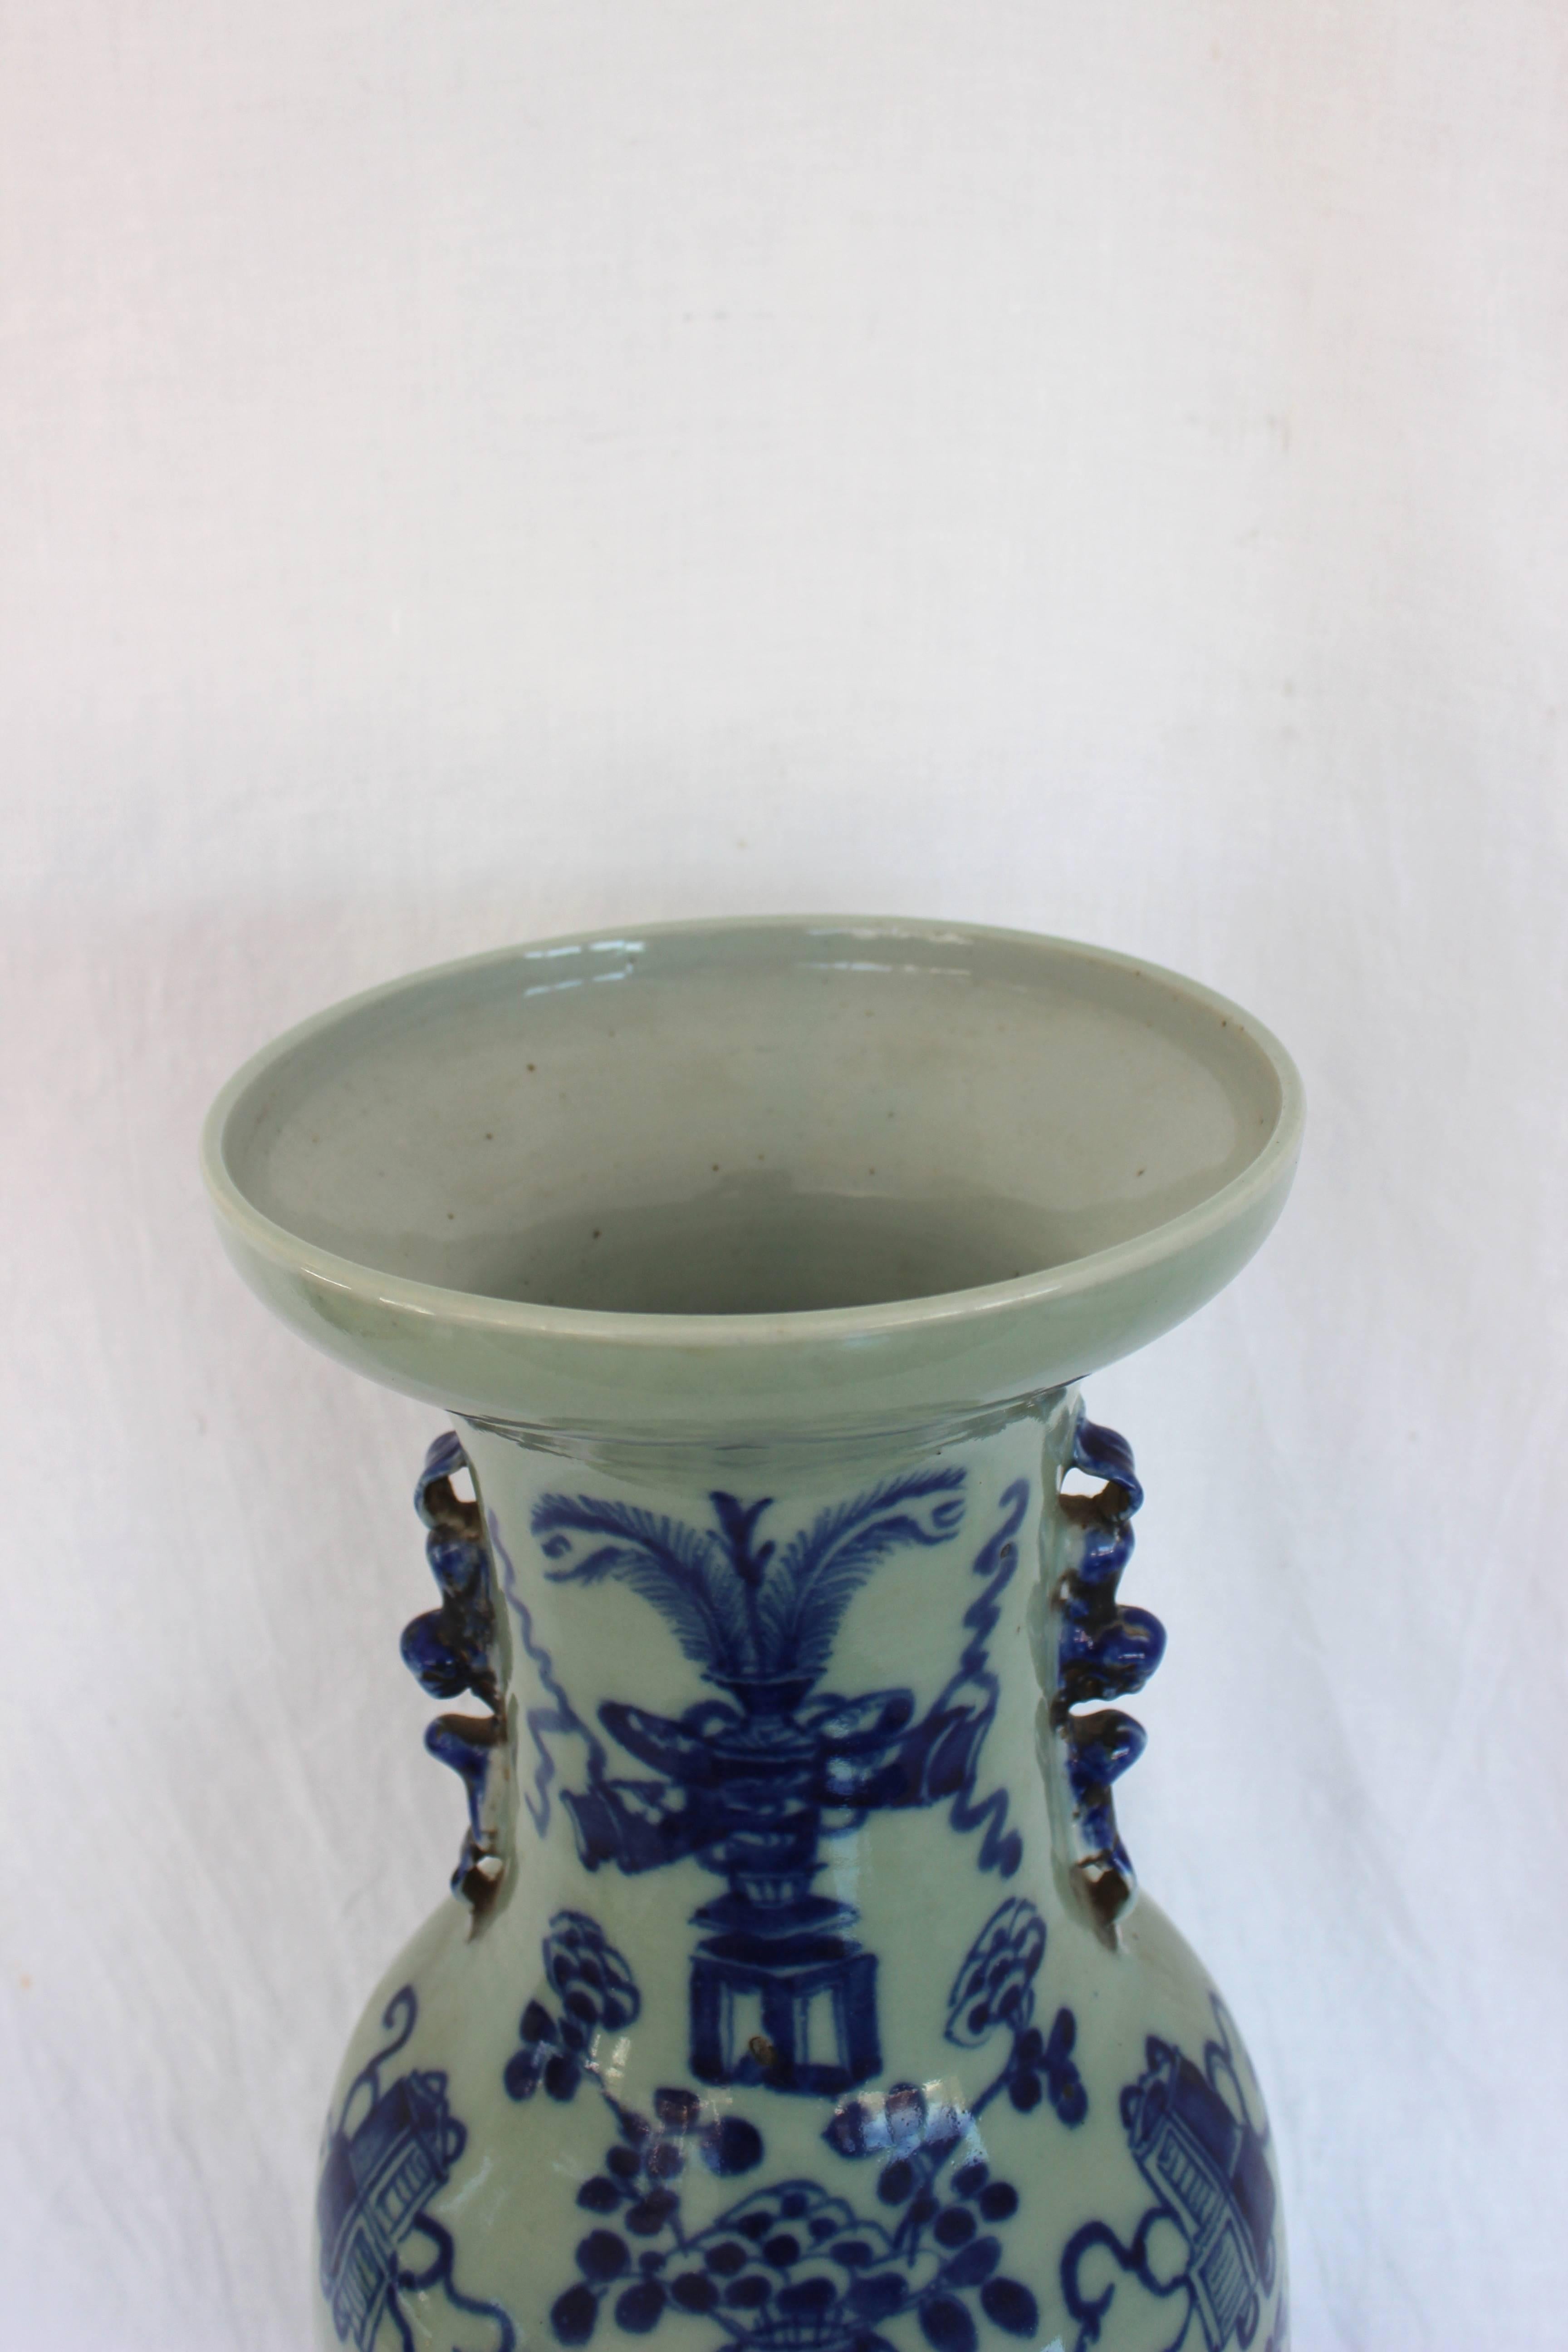 Chinesische Vase in Blau und Weiß.